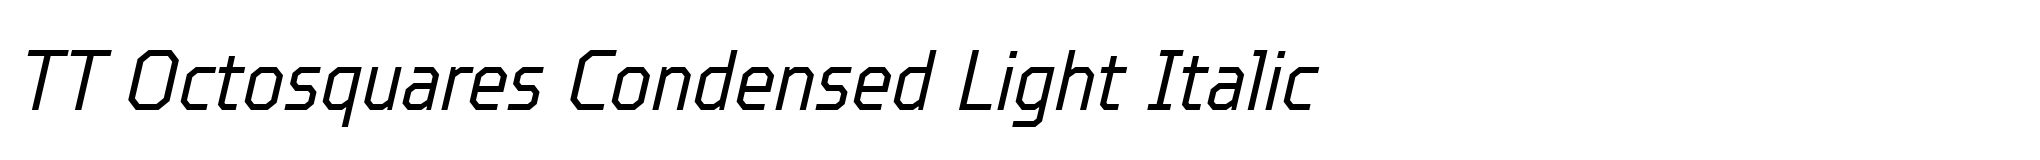 TT Octosquares Condensed Light Italic image